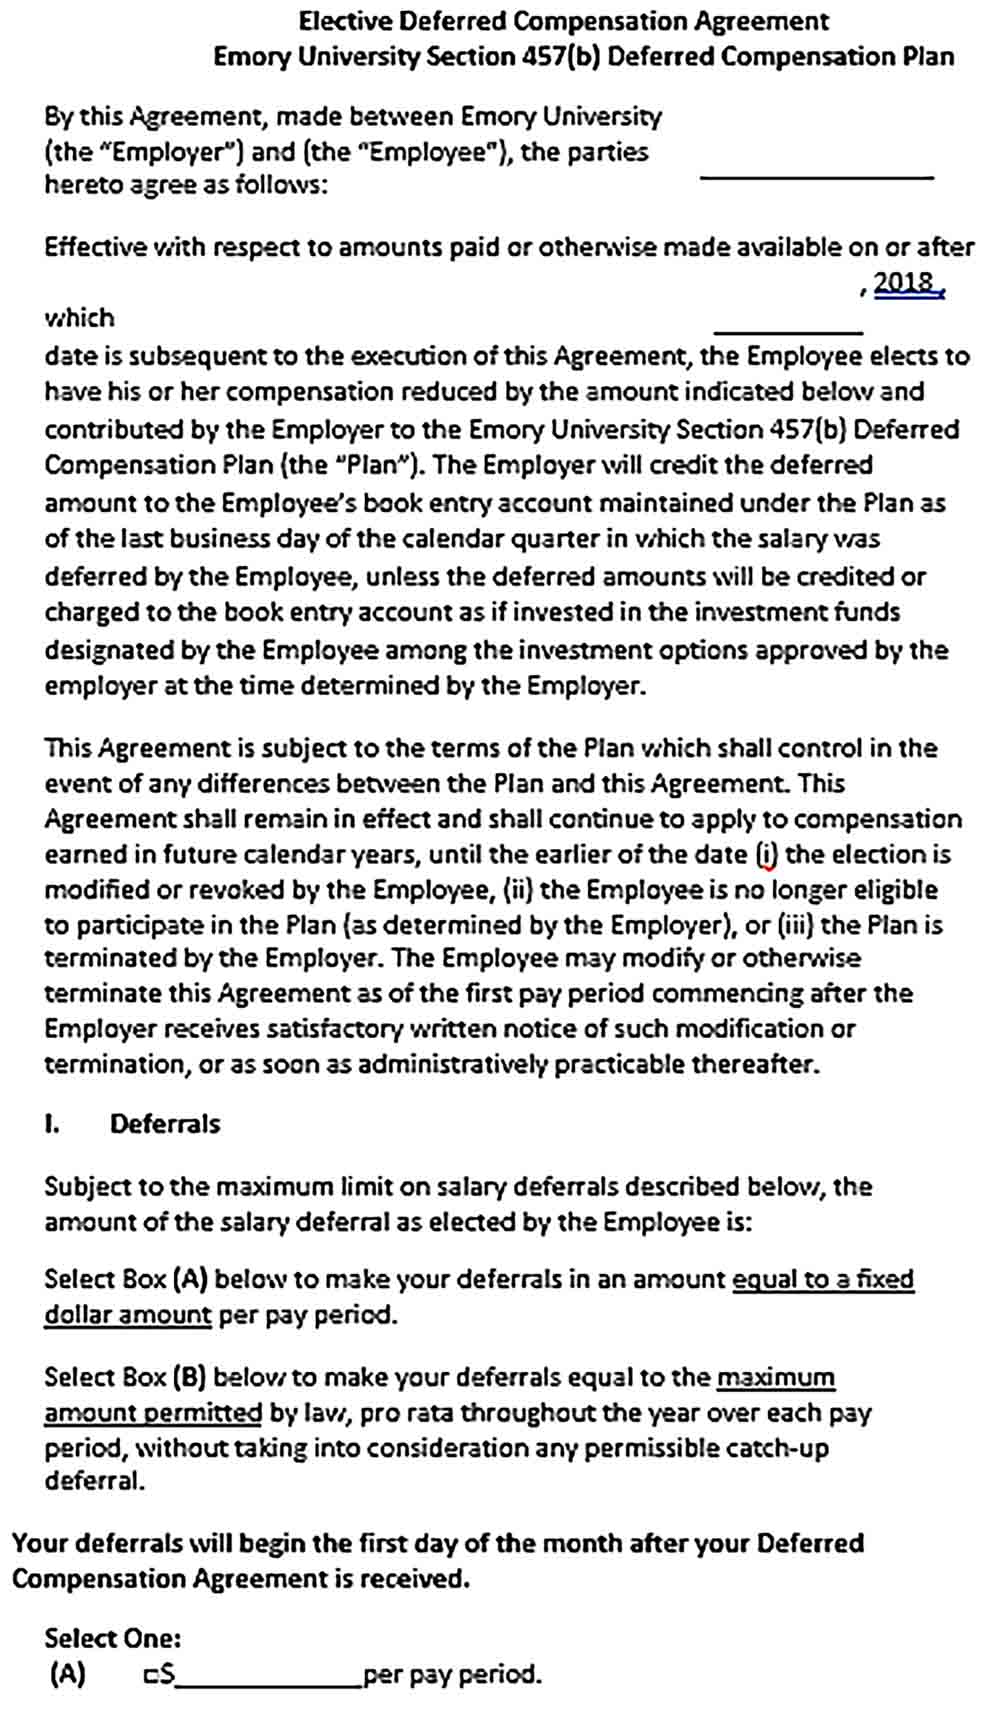 Sample deferred compensation agreement form